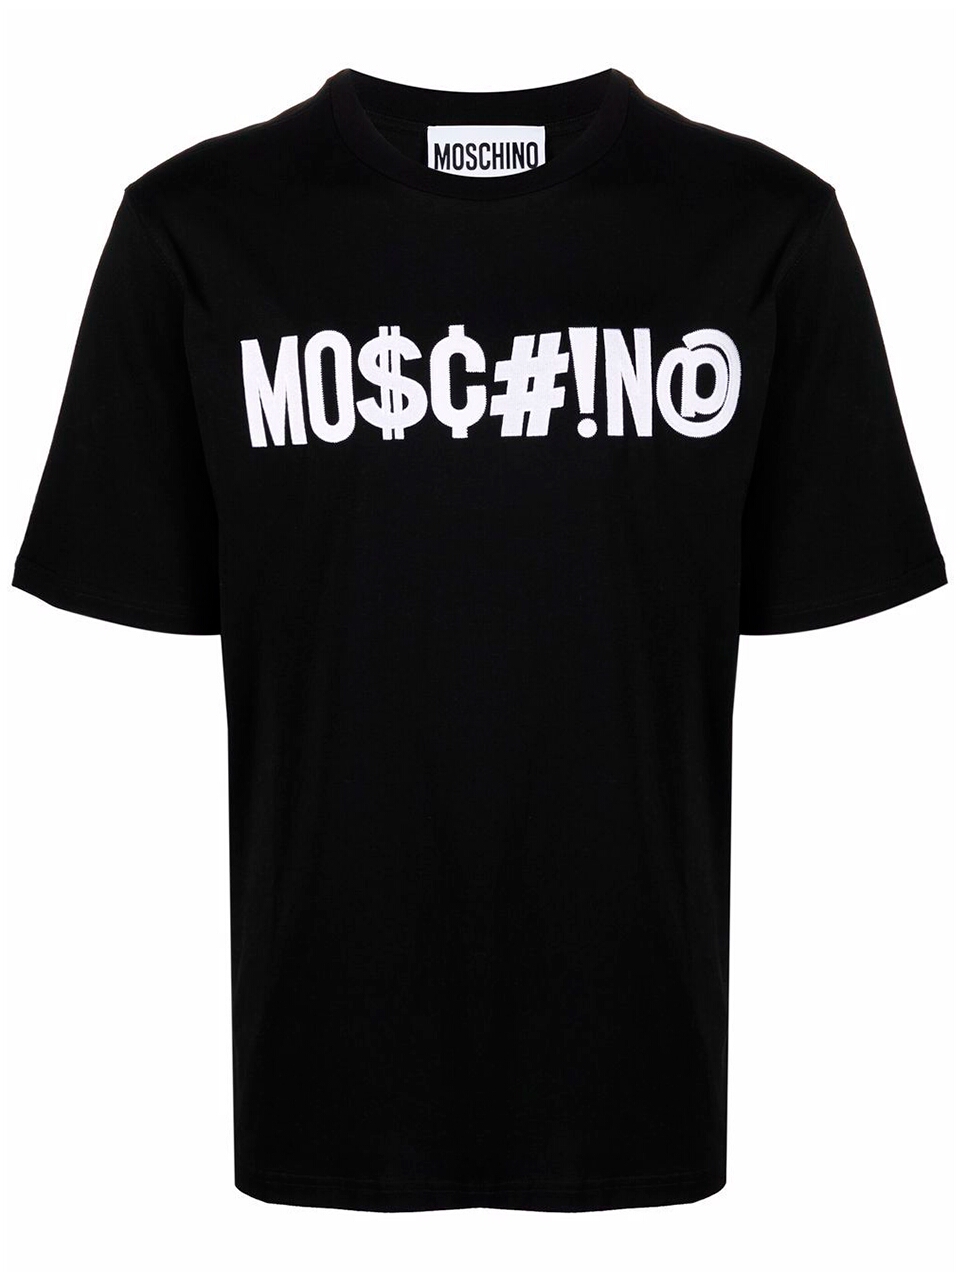 Imagem de: Camiseta Moschino Preta com Logo Symbols Branco